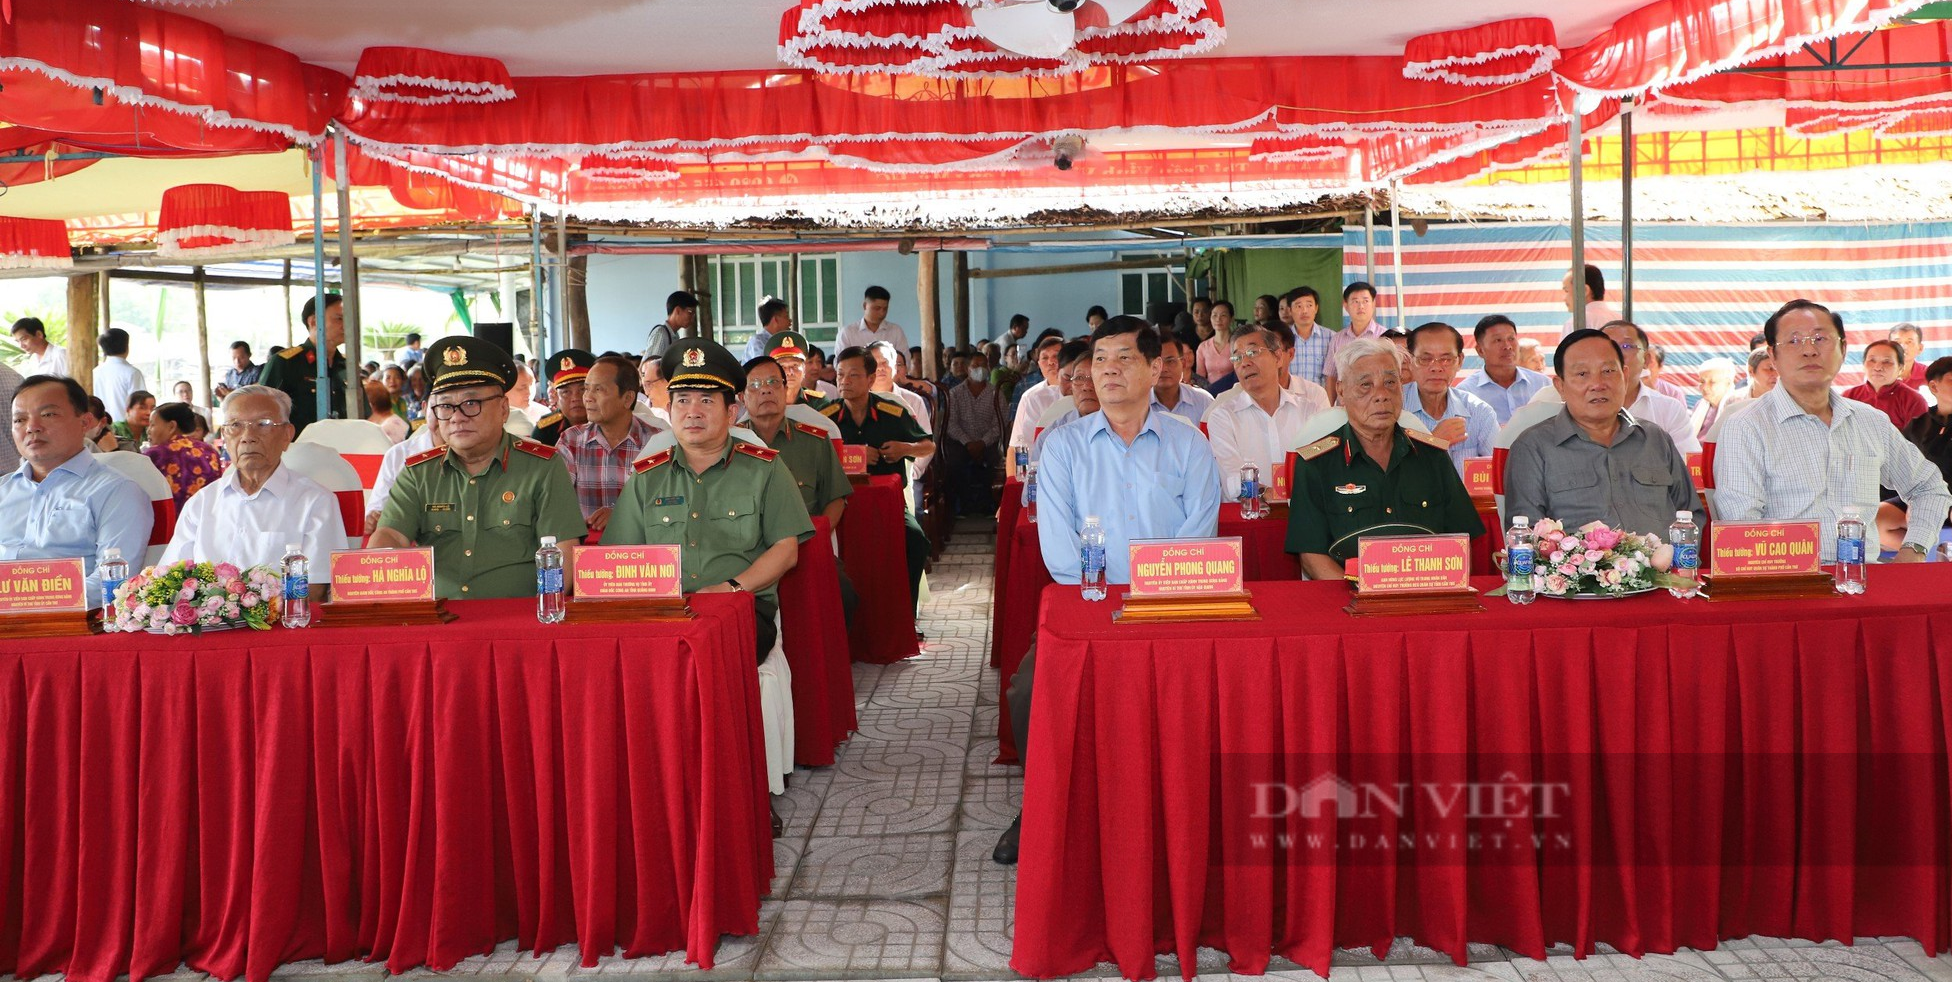 Thiếu tướng Đinh Văn Nơi, Giám đốc Công an Quảng Ninh vận động tặng đường nông thôn gần 10 tỷ đồng tại Hậu Giang - Ảnh 1.